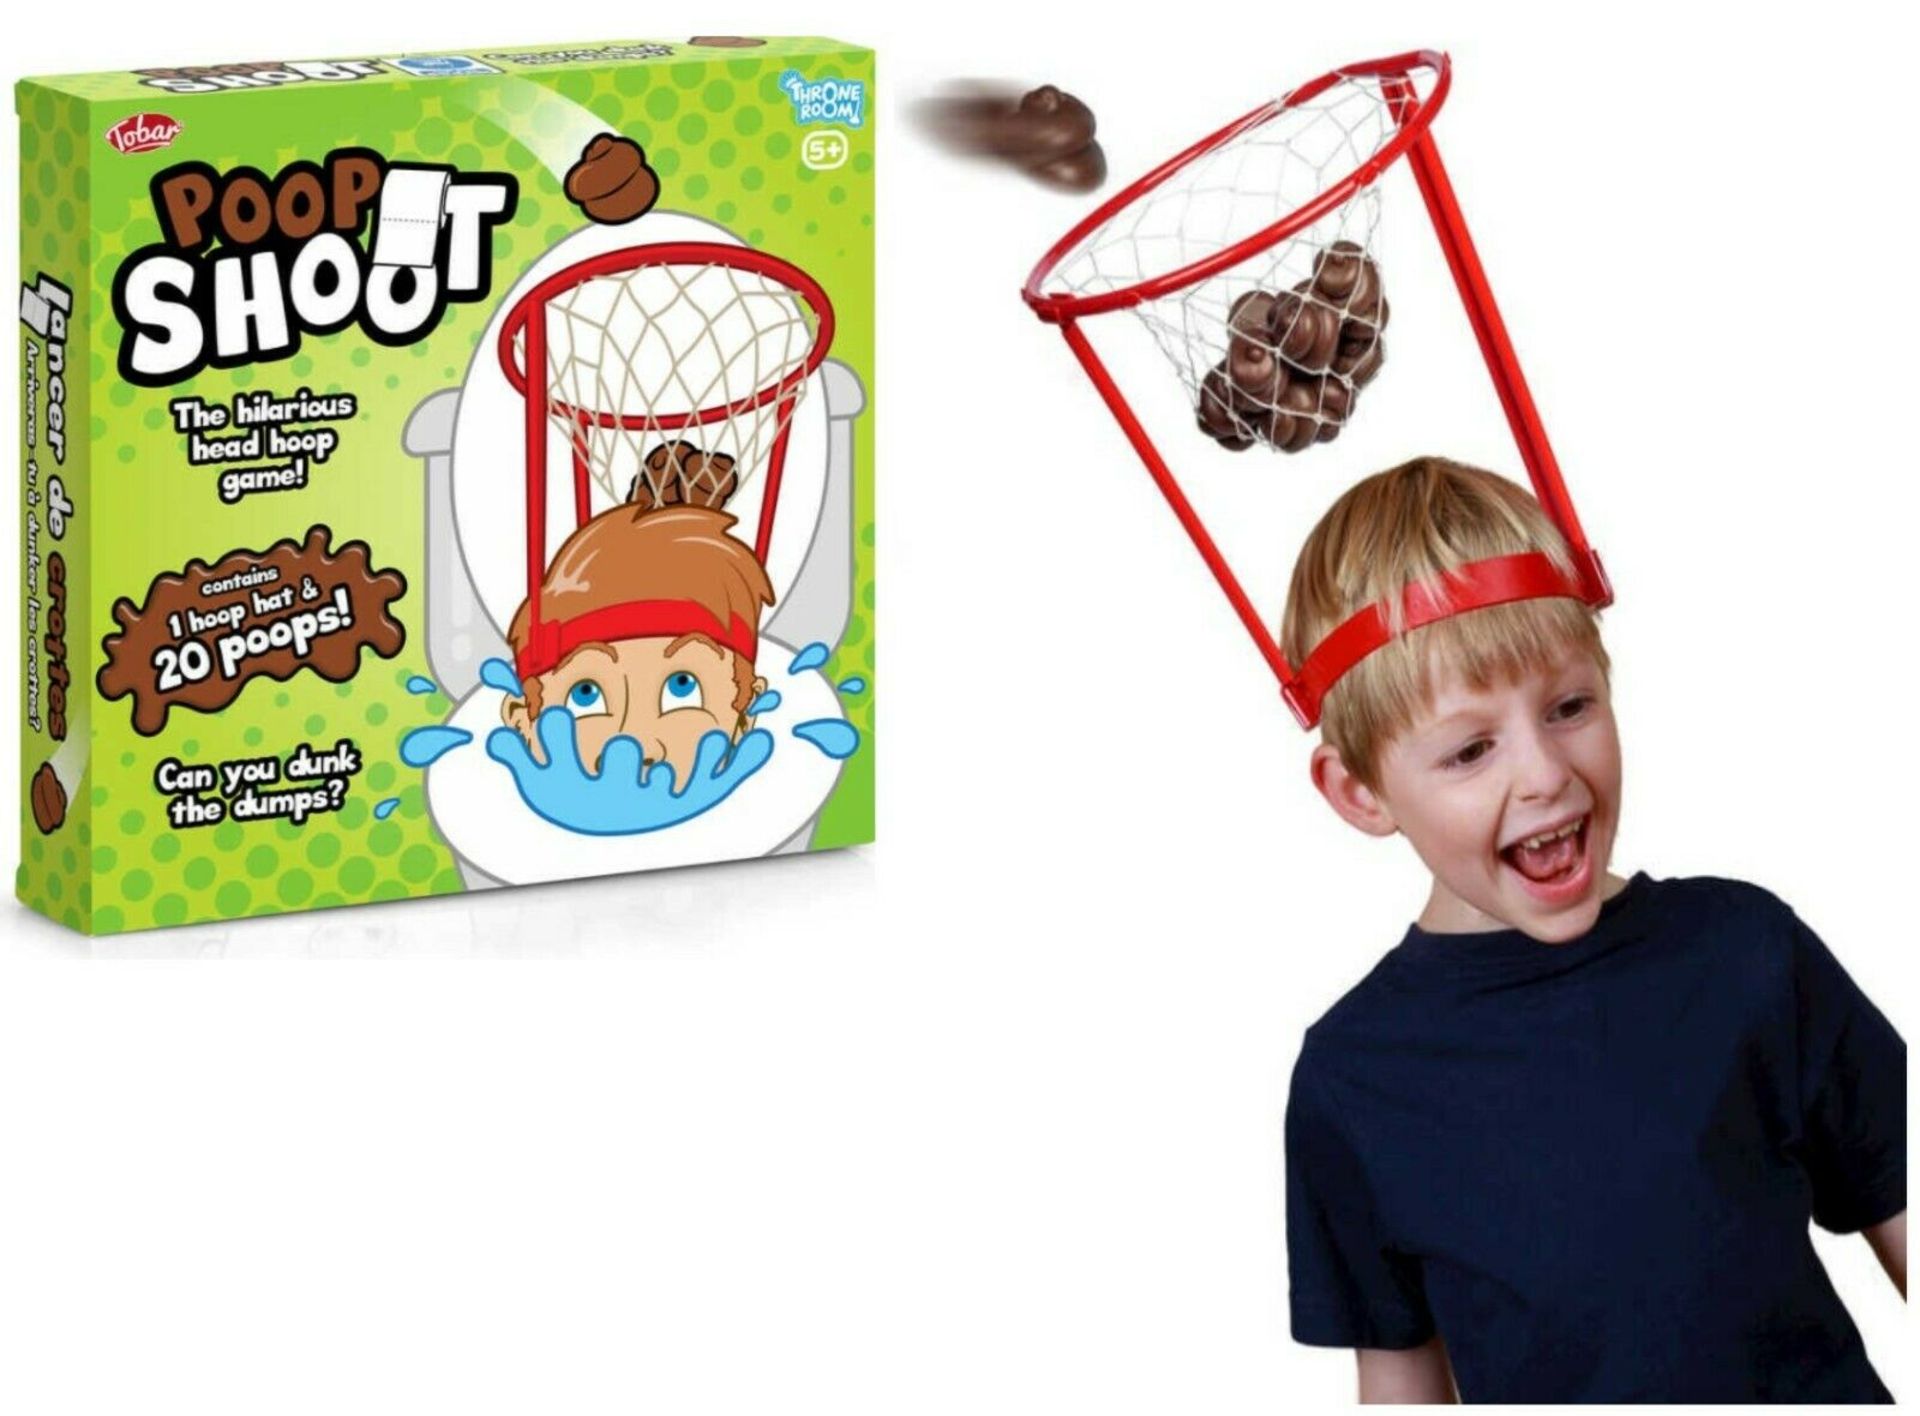 New Poop Shoot Game With 1 Hoop Hat & 20 Poops